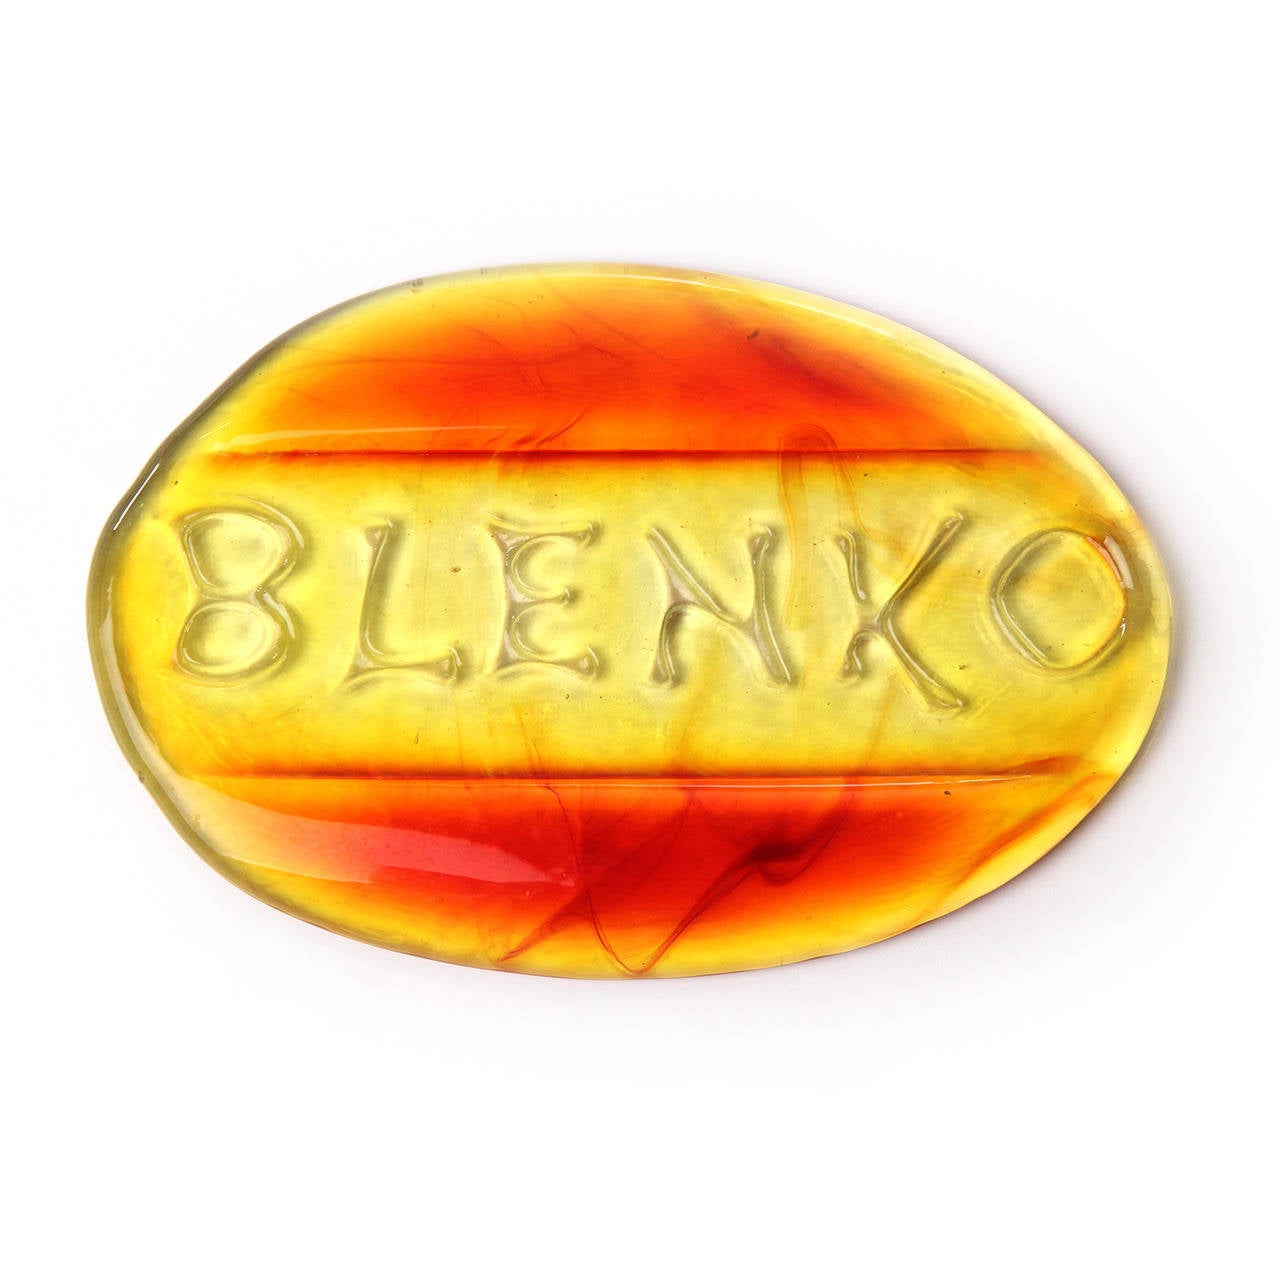 Ein ungewöhnliches und handgefertigtes Glas-Schreibtischgewicht in leuchtenden Bernstein- und Rottönen als Werbung für die Blenko-Glaswerke.